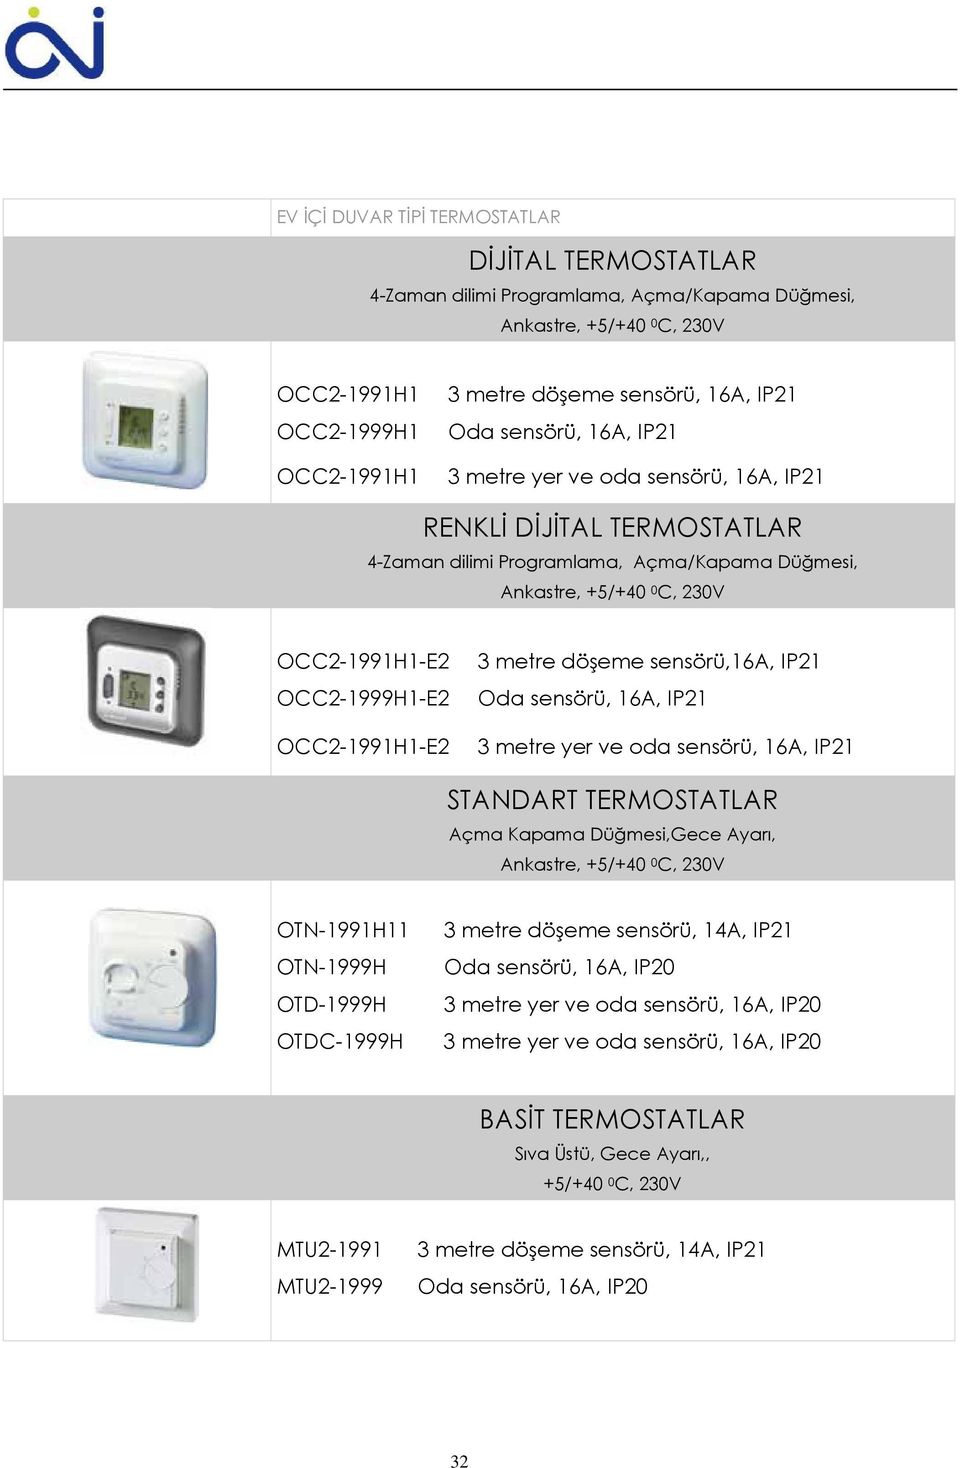 OCC2-1991H1-E2 3 metre döşeme sensörü,16a, IP21 Oda sensörü, 16A, IP21 3 metre yer ve oda sensörü, 16A, IP21 STANDART TERMOSTATLAR Açma Kapama Düğmesi,Gece Ayarı, Ankastre, +5/+40 0 C, 230V